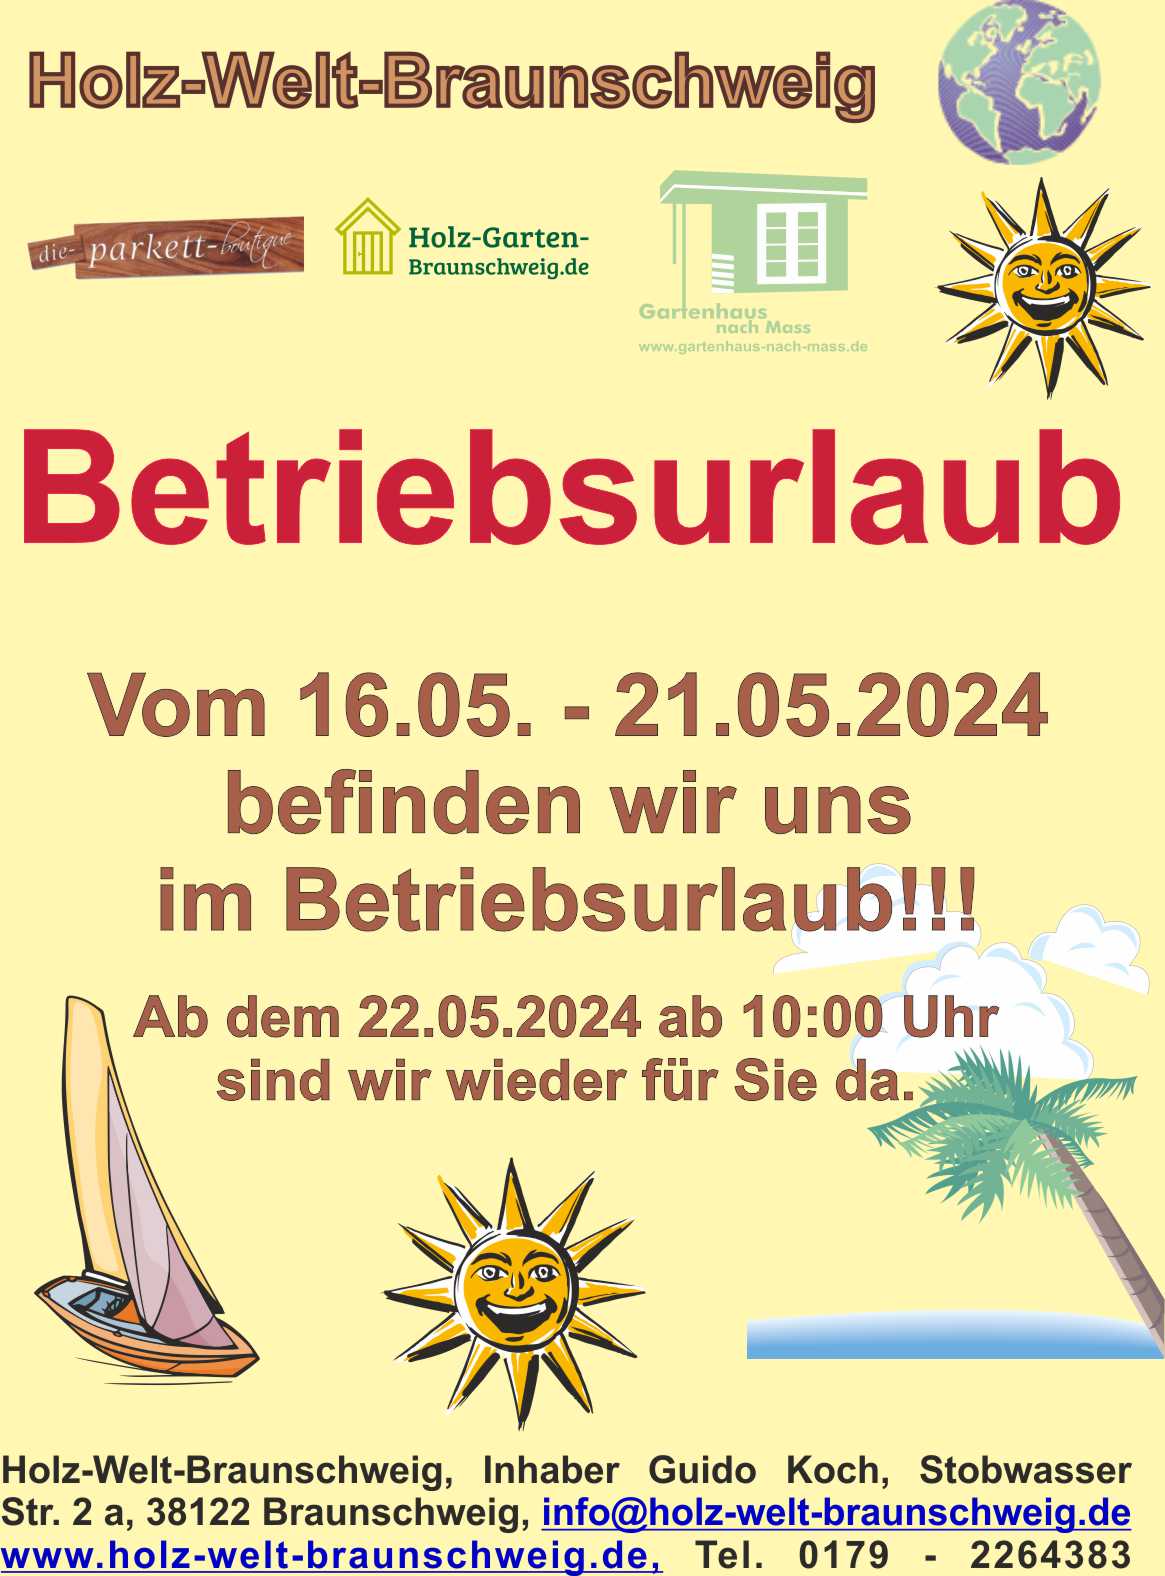 Holz-Welt-Braunschweig_Betriebsurlaub_2024_Pfingsten.jpg